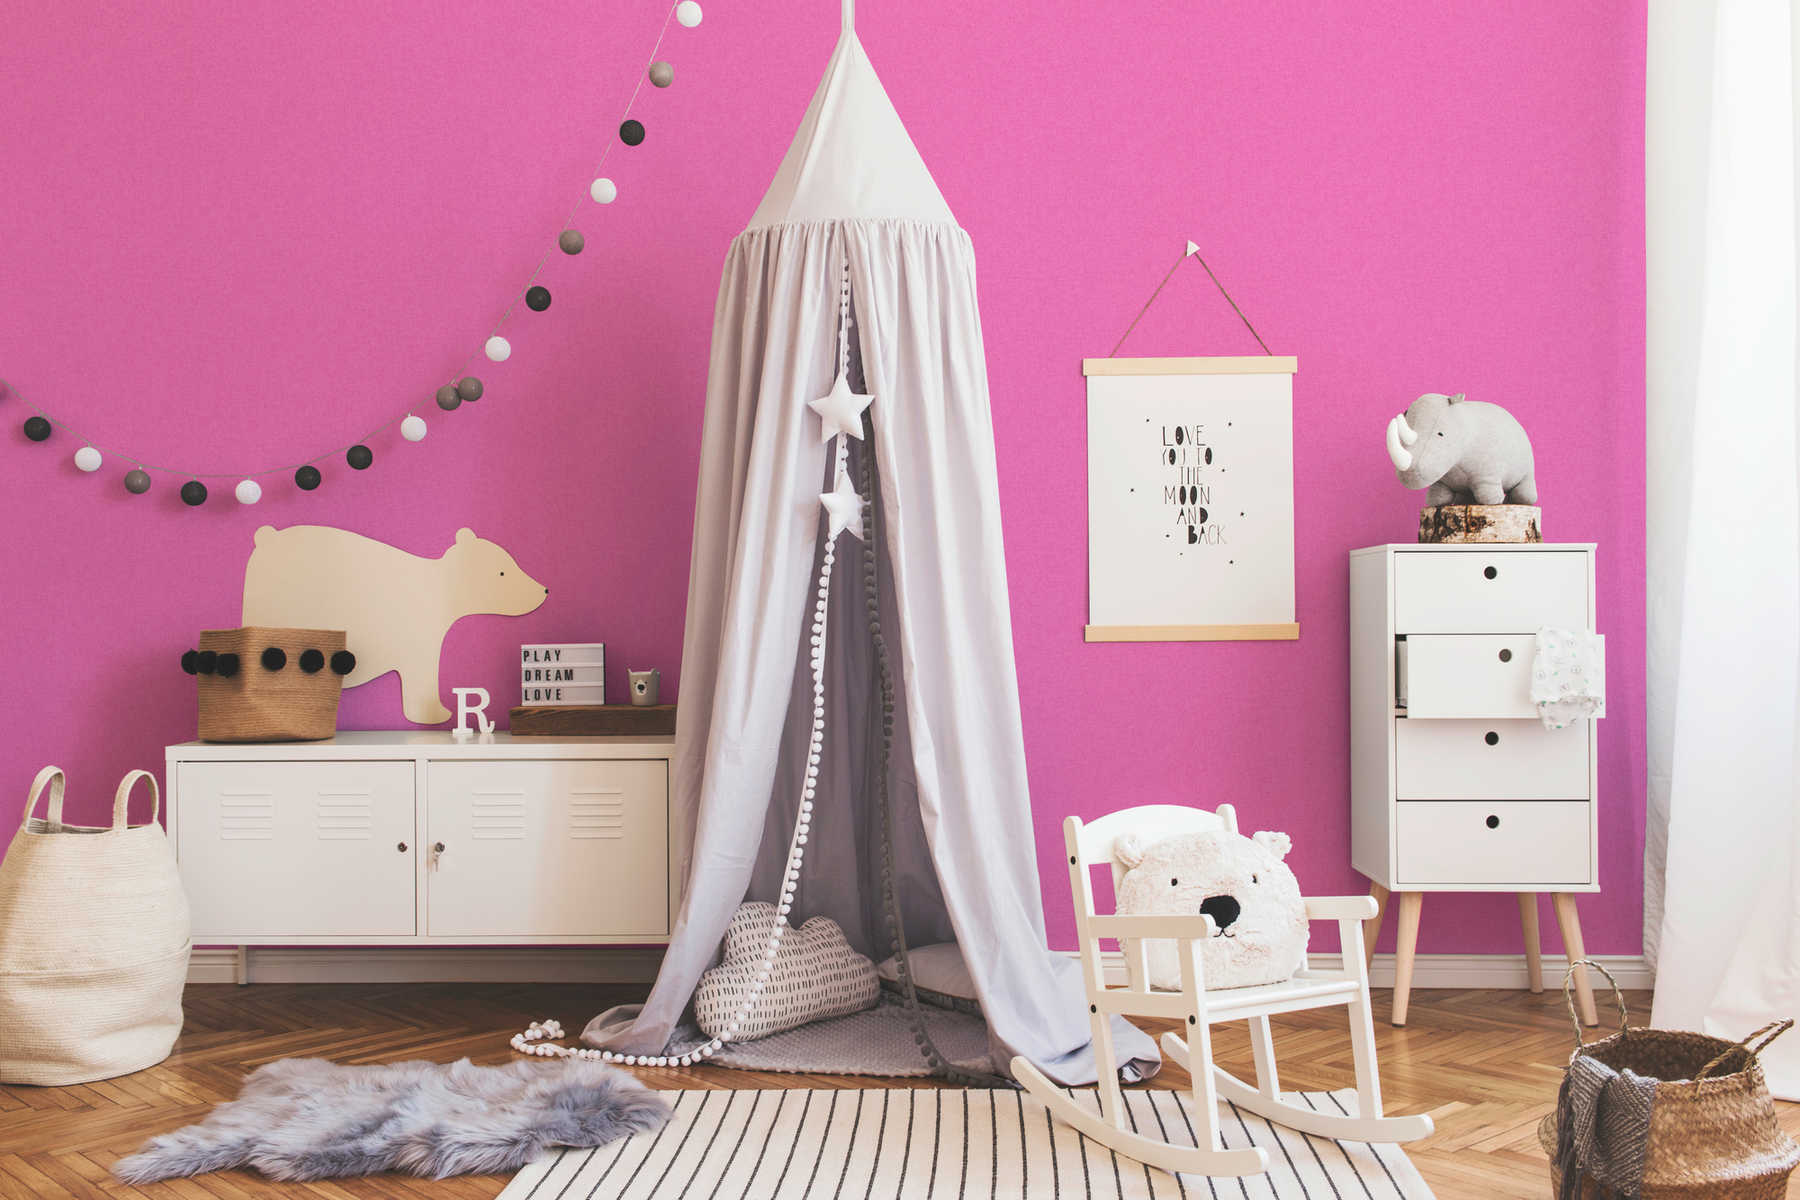             Kinderzimmer Tapete Pink für Mädchen, einfarbig
        